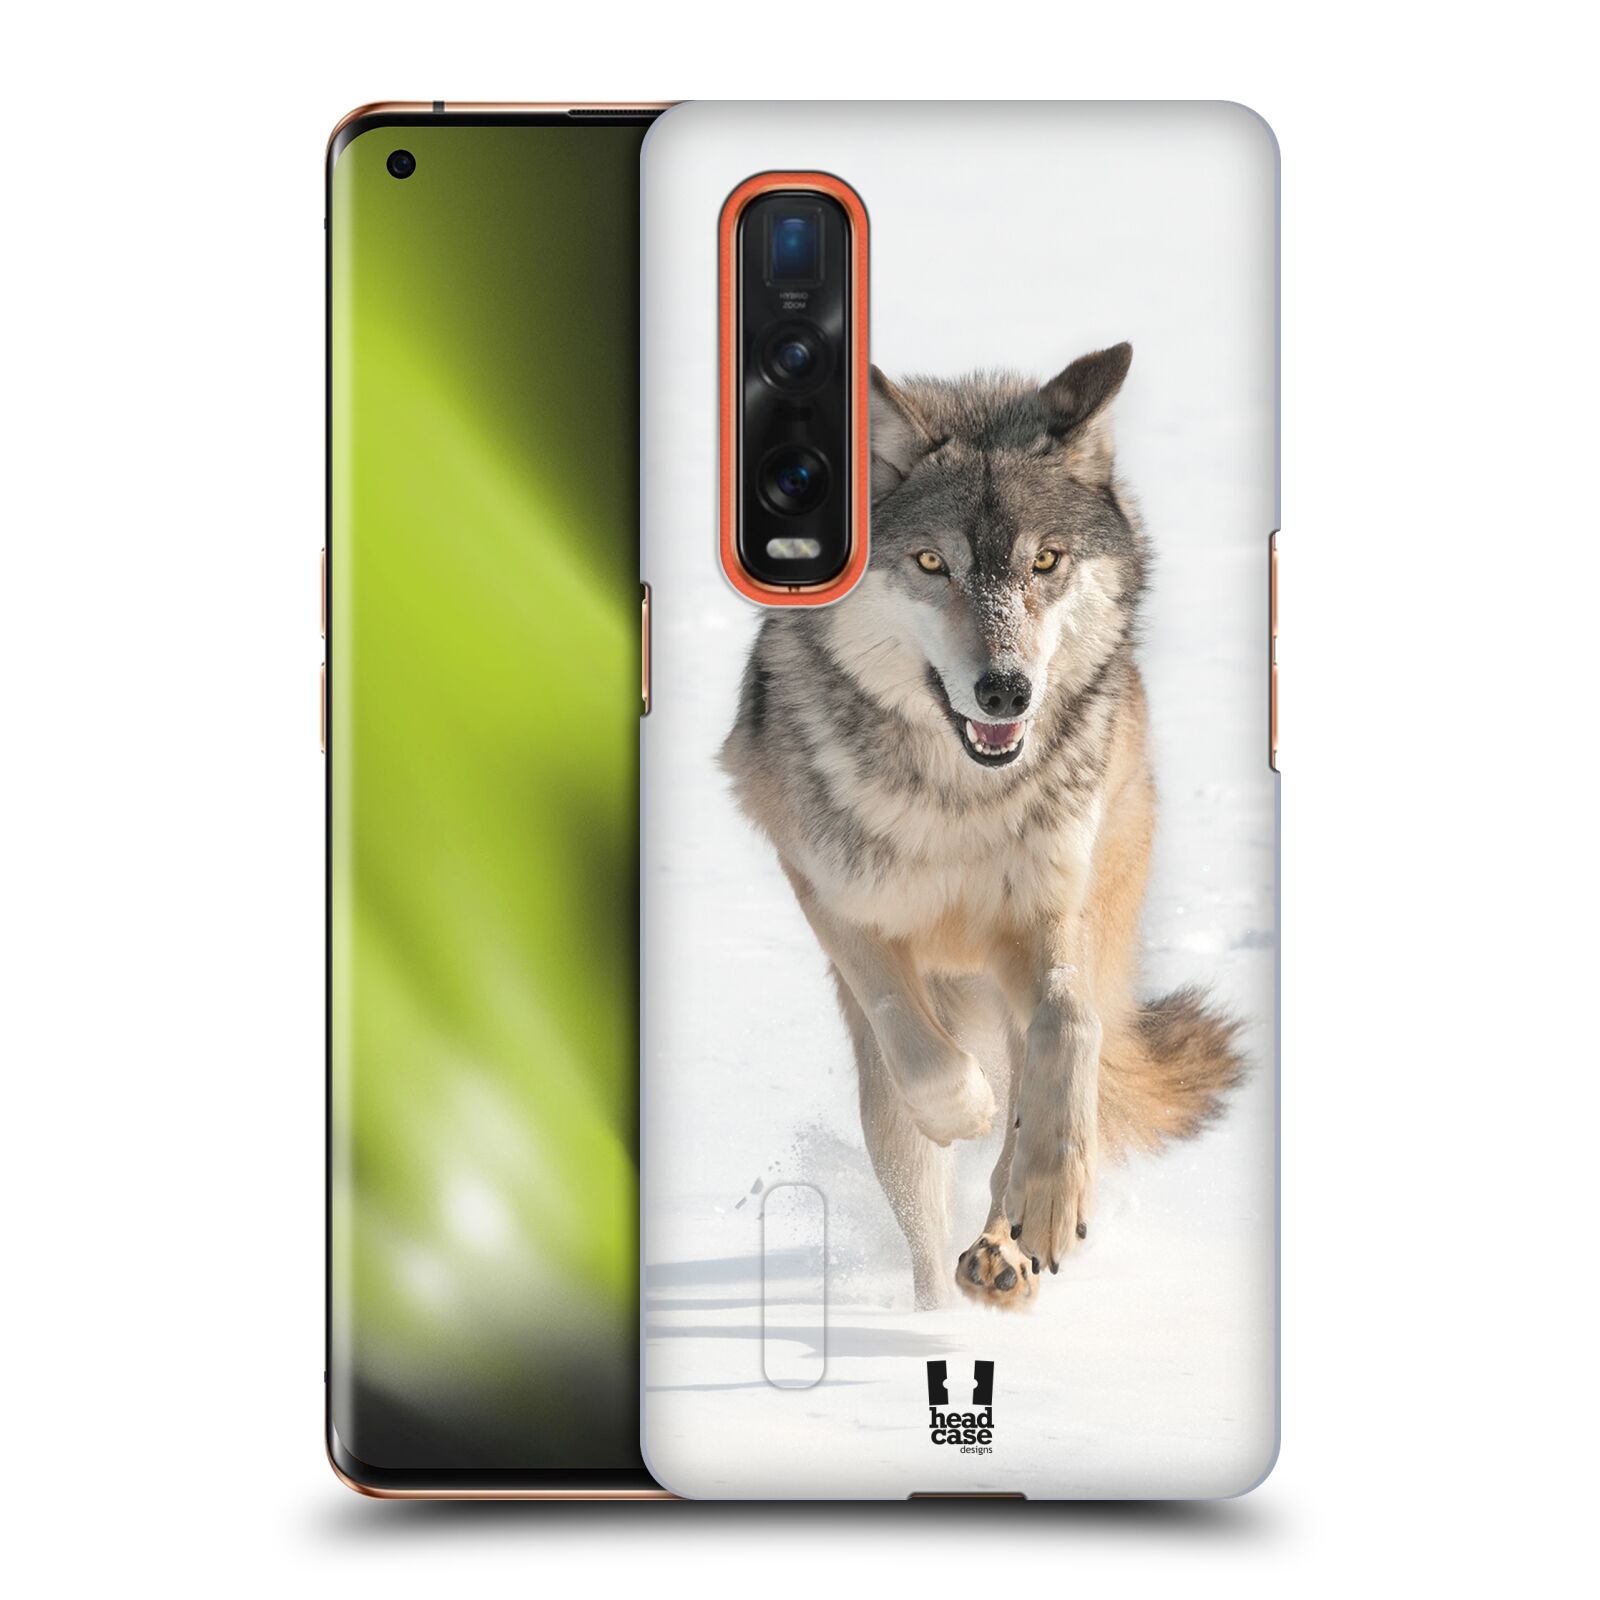 Zadní obal pro mobil Oppo Find X2 PRO - HEAD CASE - Svět zvířat divoký vlk